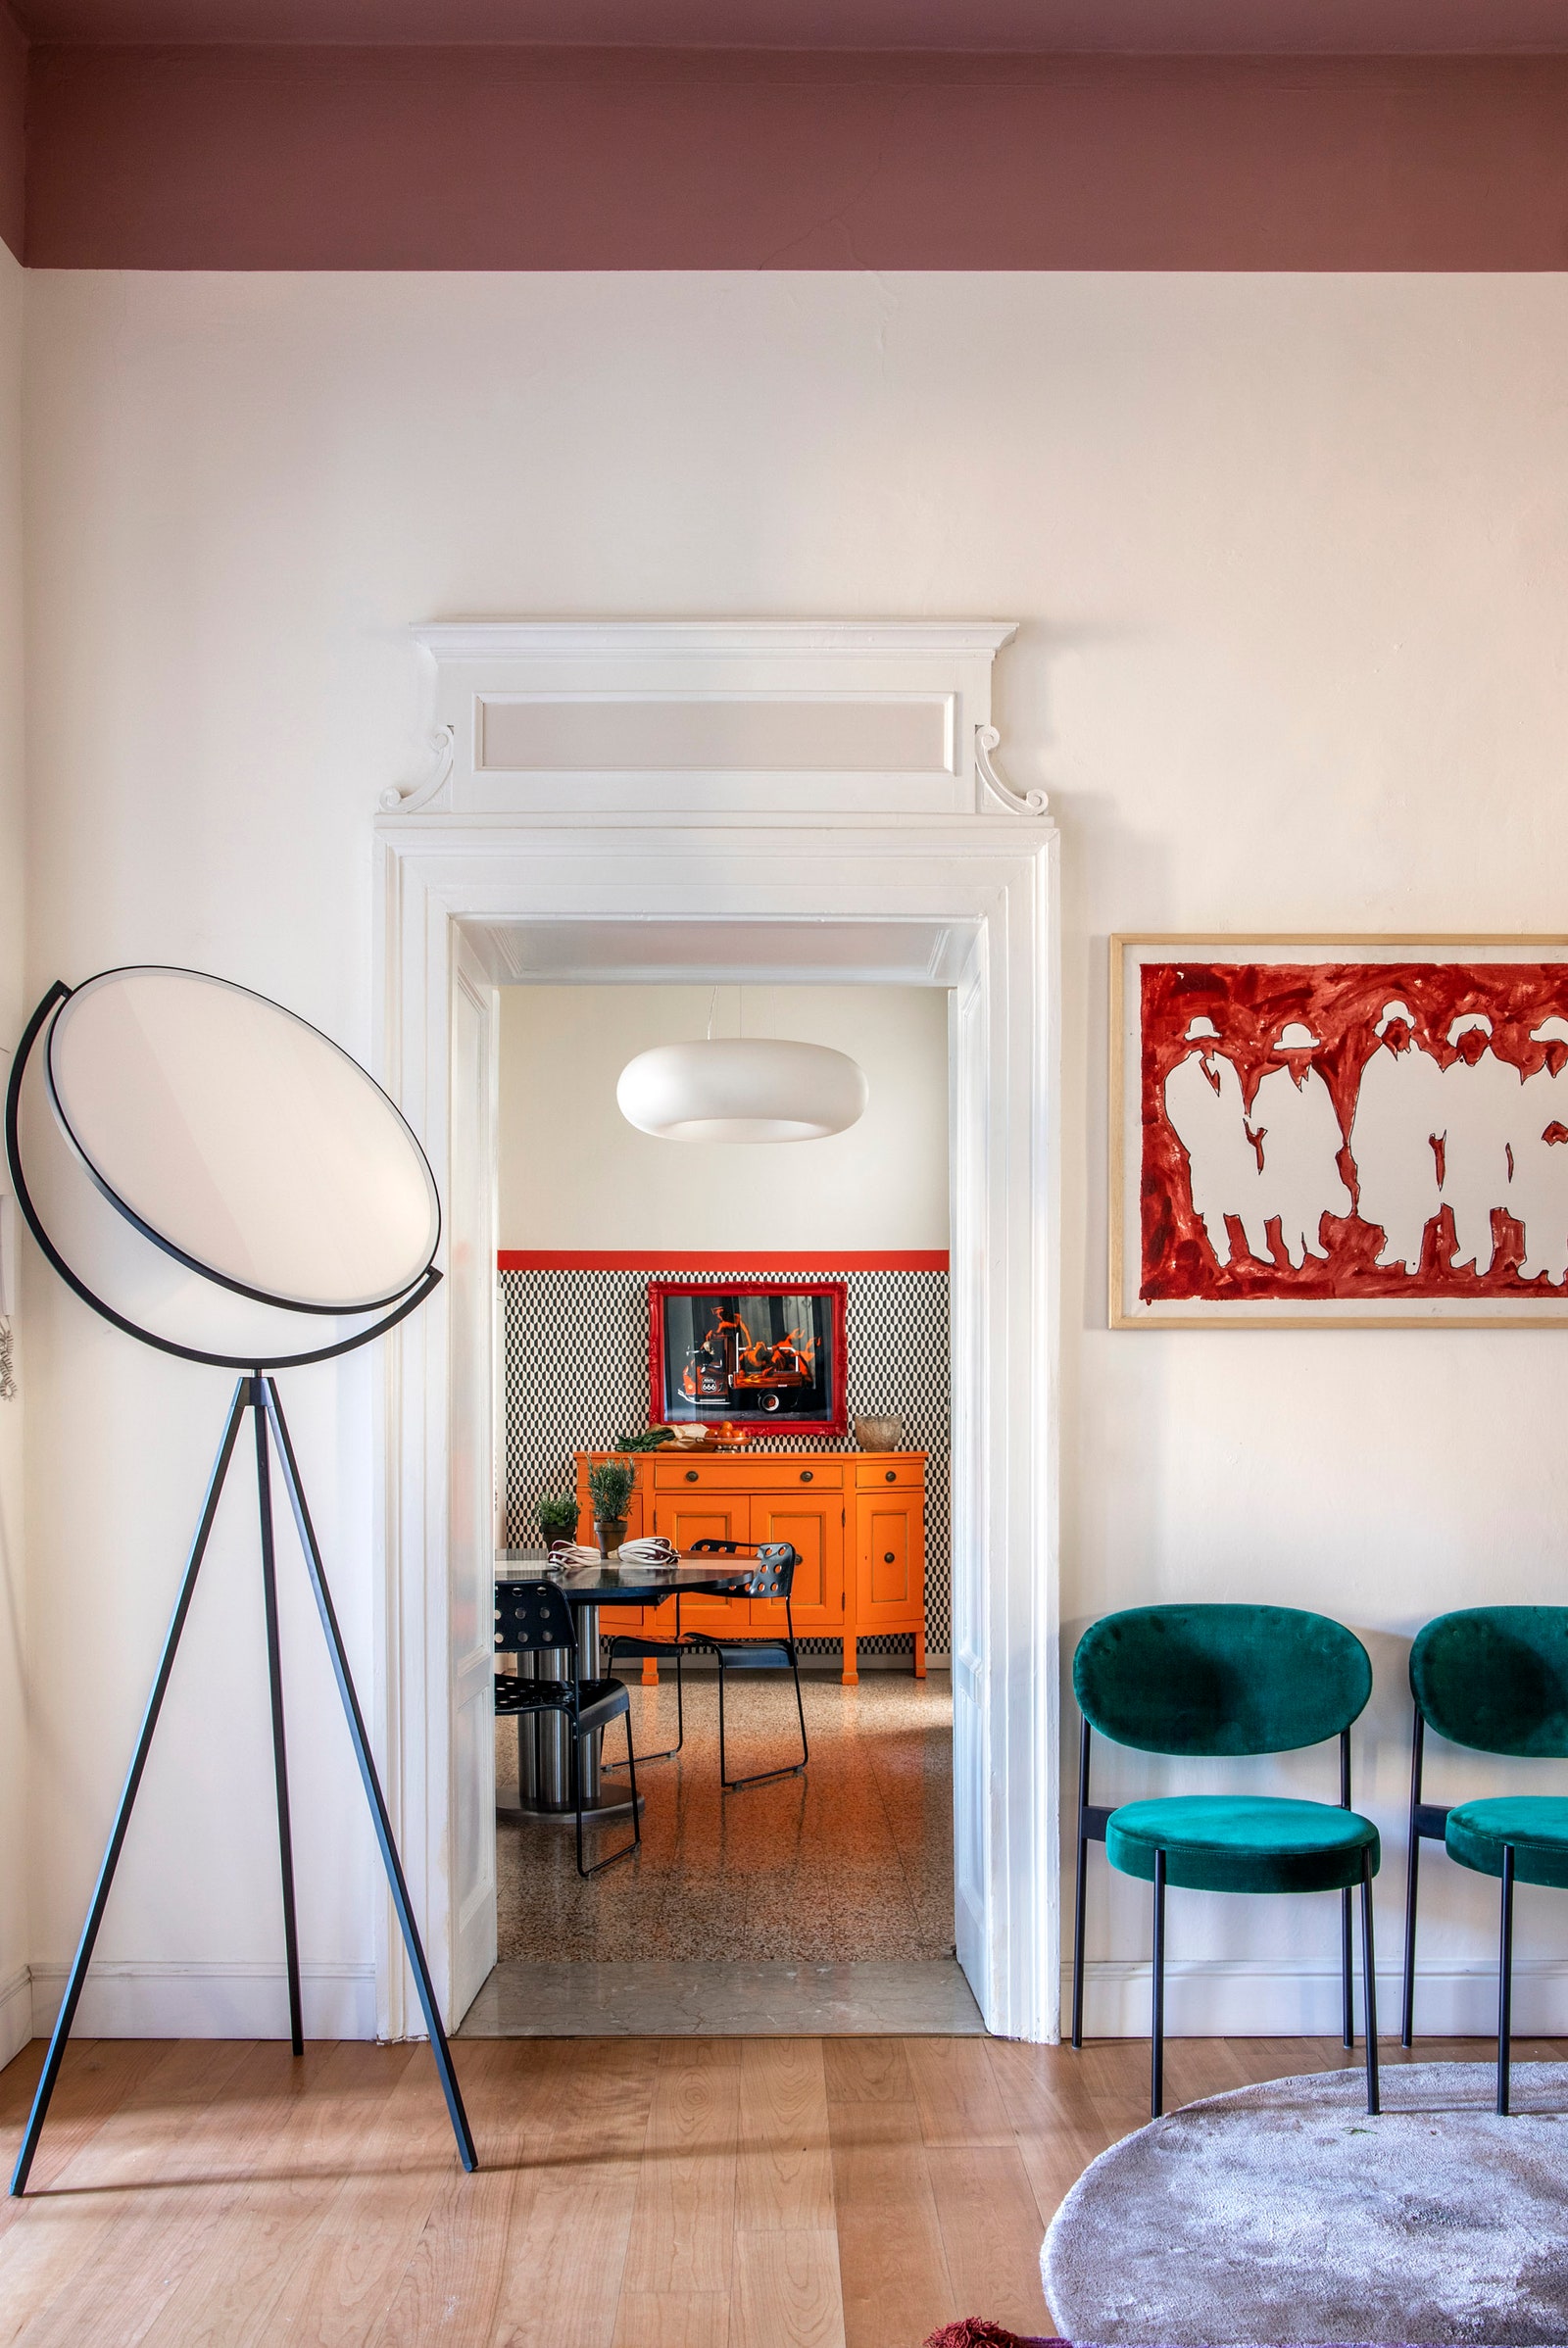 Фрагмент столовой и вид на кухню. Торшер Superloon Flos на стене работа Марио Скифано.